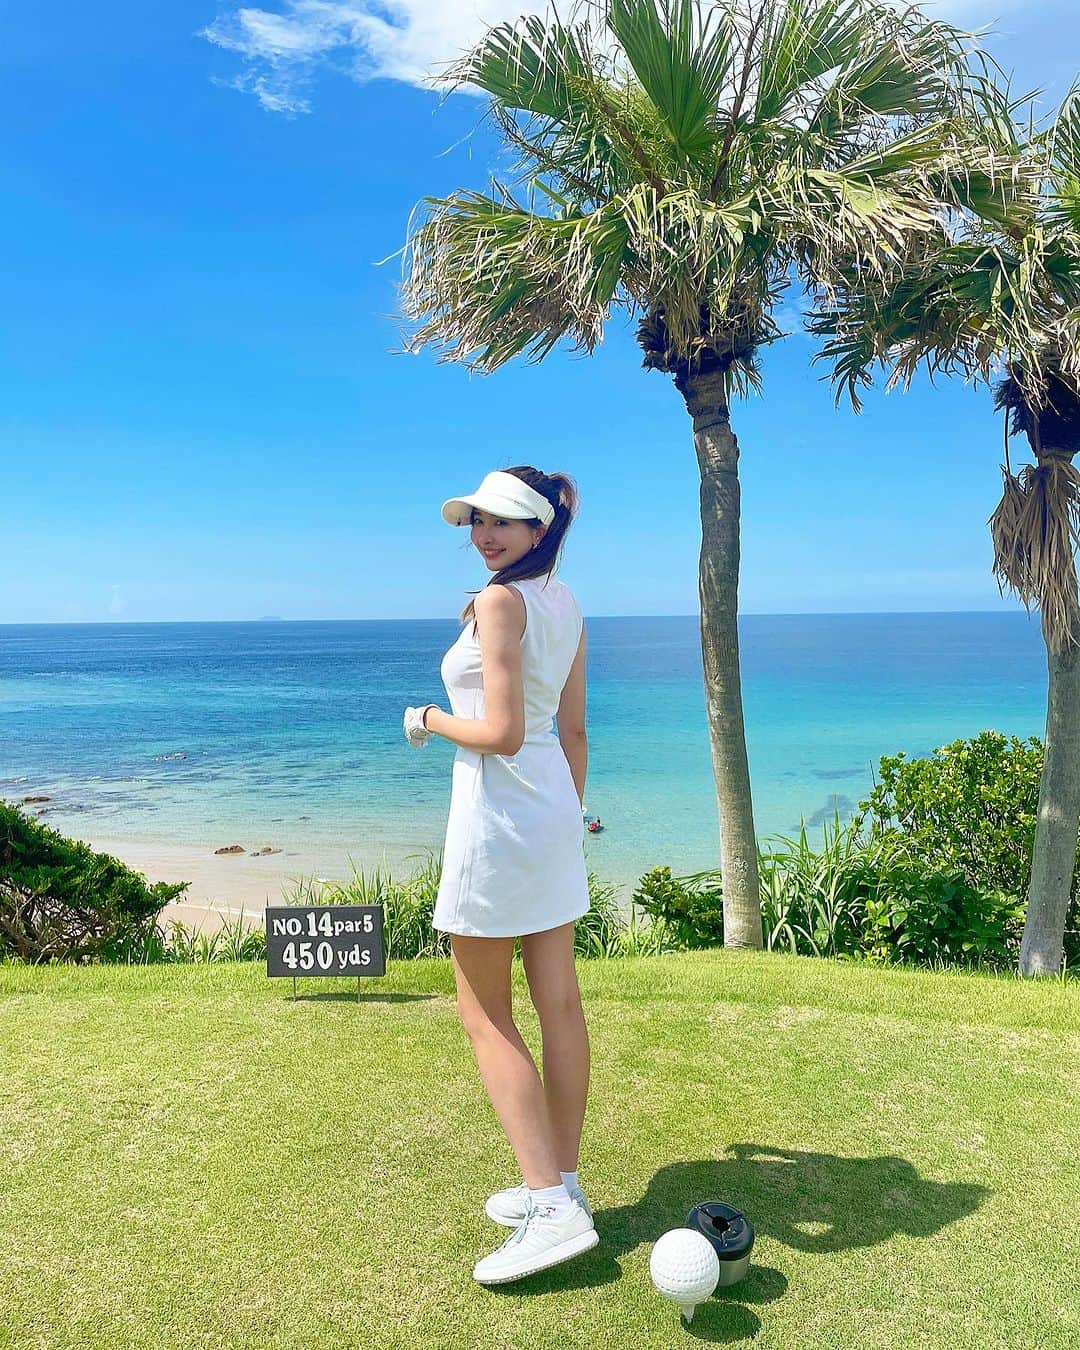 関綾乃のインスタグラム：「今まで行った日本のゴルフ場の中で一番綺麗だった🥰💓 ・ ・ 最高なロケーションでハワイに行った気分になれましたぁ🥹🏝️ 全部映えてたから、写真いっぱい撮ちゃった☺️✨ ・ ・ 行ってみたかったコースだから行けて嬉しかった🥹 毎回ここでゴルフしたいくらい気に入っちゃった😍💚 涼しくなったらまた行きたいなぁ🫶 ・ ・ #golfstagram #golfwear #golflife #golfgirl #ゴルフ女子#ゴルフウェア#ゴルフ女子コーデ #ゴルフスイング#ゴルフ好きな人と繋がりたい#エンジョイゴルフ#福岡ゴルフ#福岡ゴルフ女子#ゴルフ女子#福岡ゴルファー #福岡ゴルフ仲間募集 #福岡ゴルファーと繋がりたい #志摩シーサイドカンツリークラブ #絶景ゴルフ場 #ゴルフ動画 #ゴルフスイング動画  #vg_fashion #golfhackgirl #reginagolf  #golf_picks #ハッピースイング #벤제프#女子ゴルフスイング#ドライバーショット#福岡#福岡グルメ#福岡インスタグラマー」